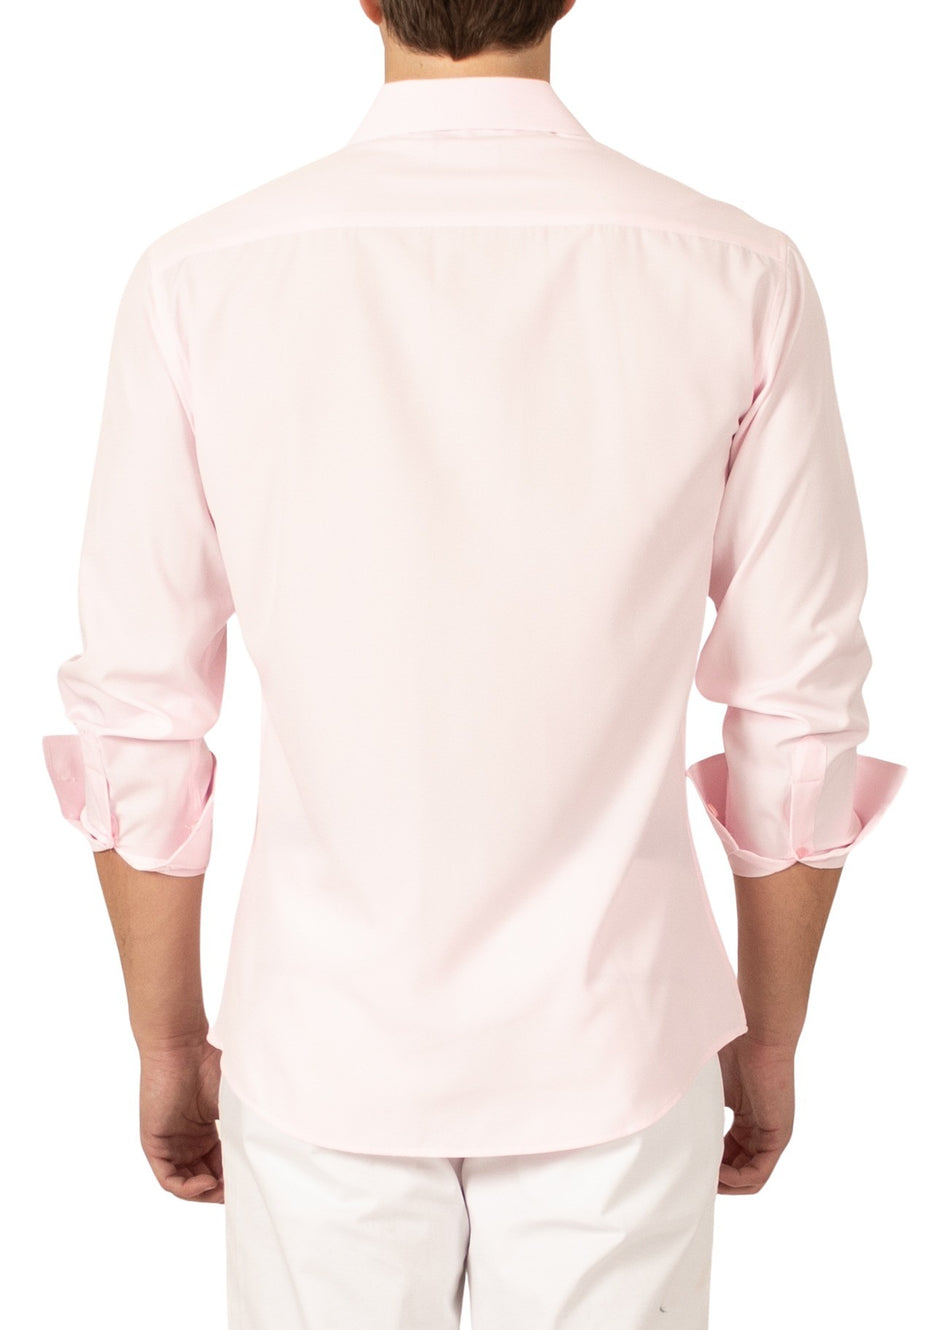 232276 - Pink Button Up Long Sleeve Dress Shirt